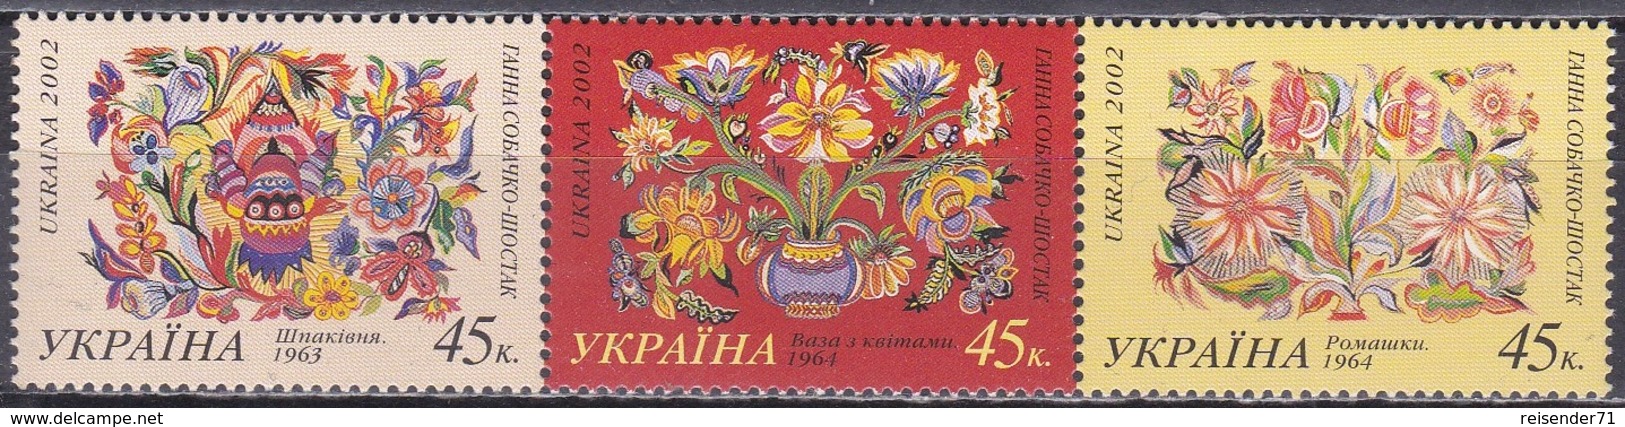 Ukraine 2002 Persönlichkeiten Kunst Kultur Gemälde Blumen Flowers Hanna Sobatschko-Schostak, Mi. 523-5 ** - Ukraine